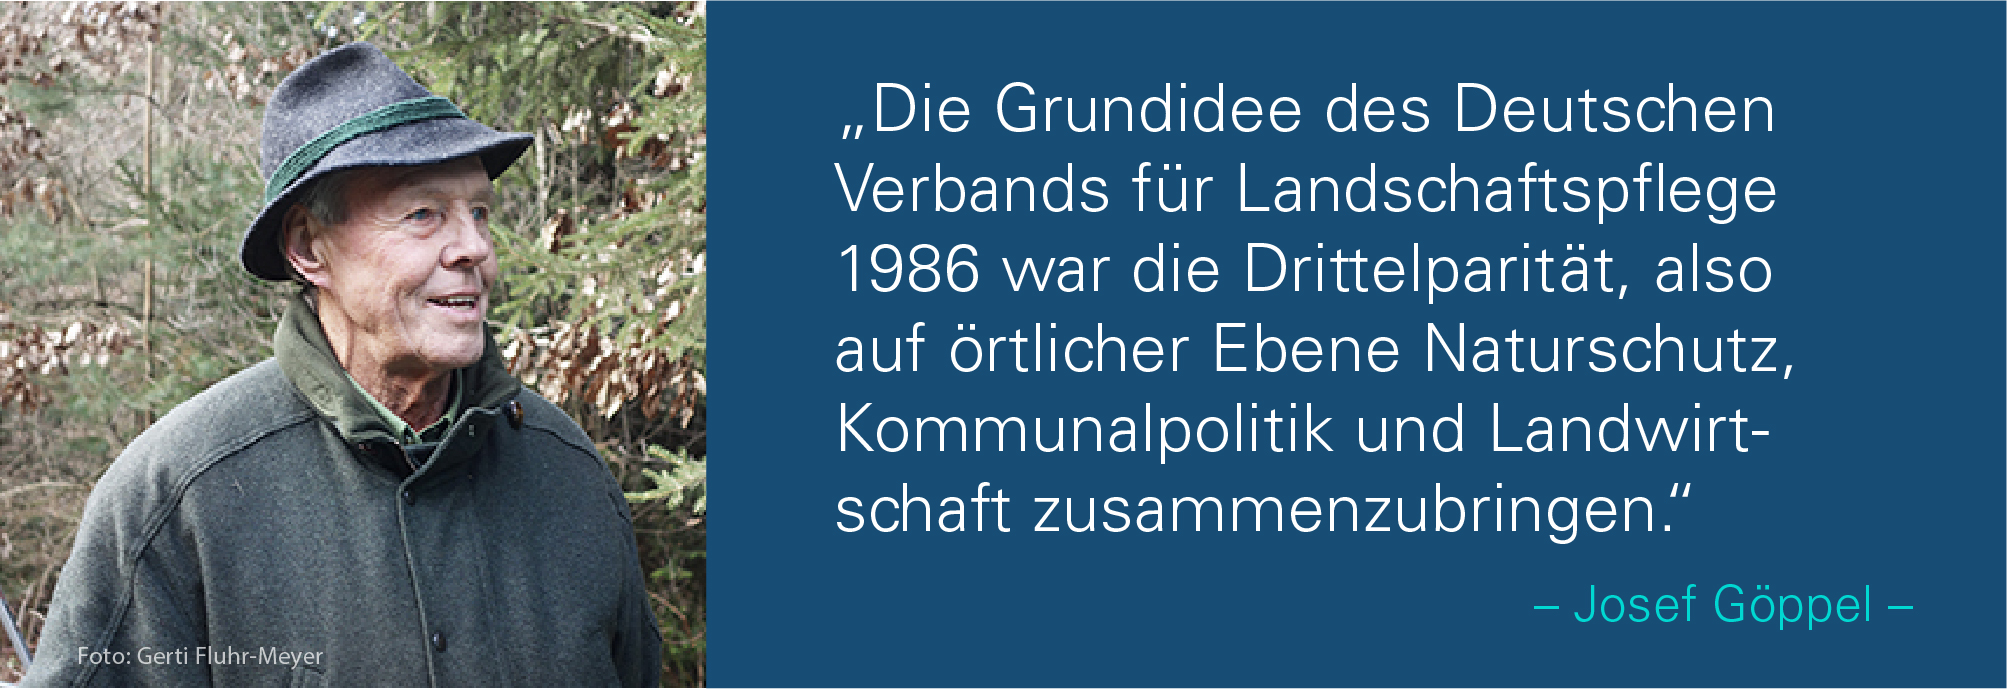 Porträt von Josef Göppel mit dem Zitat: Die Grundidee des Deutschen Verbands für Landschaftspflege 1986 war die Drittelparität, also auf örtlicher Ebene Naturschutz, Kommunalpolitik und Landwirtschaft zusammenzubringen.